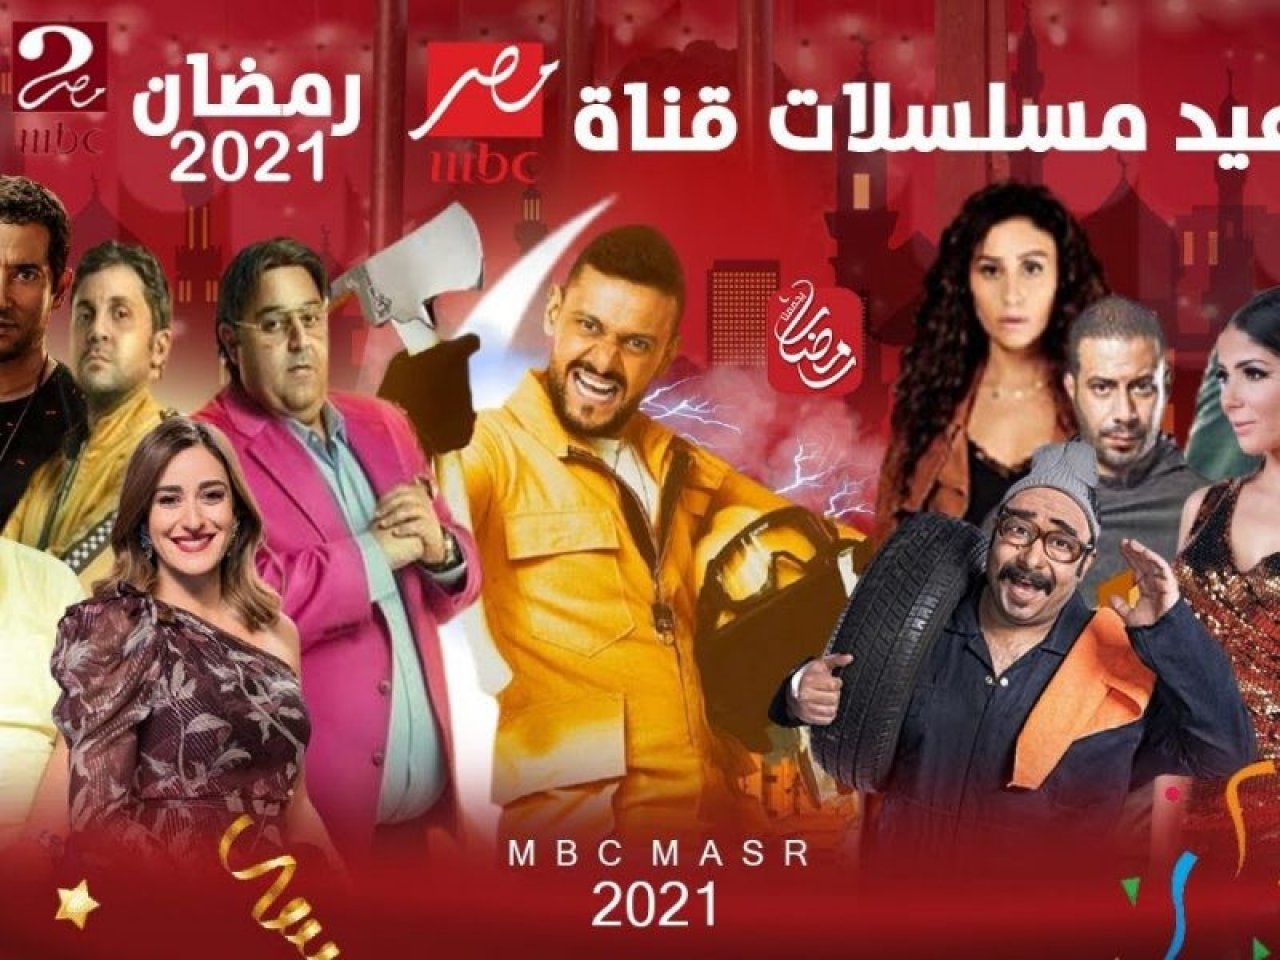 صورة اسماء مسلسلات رمضان 2022 على قناة MBC ومواعيد العرض والاعادة